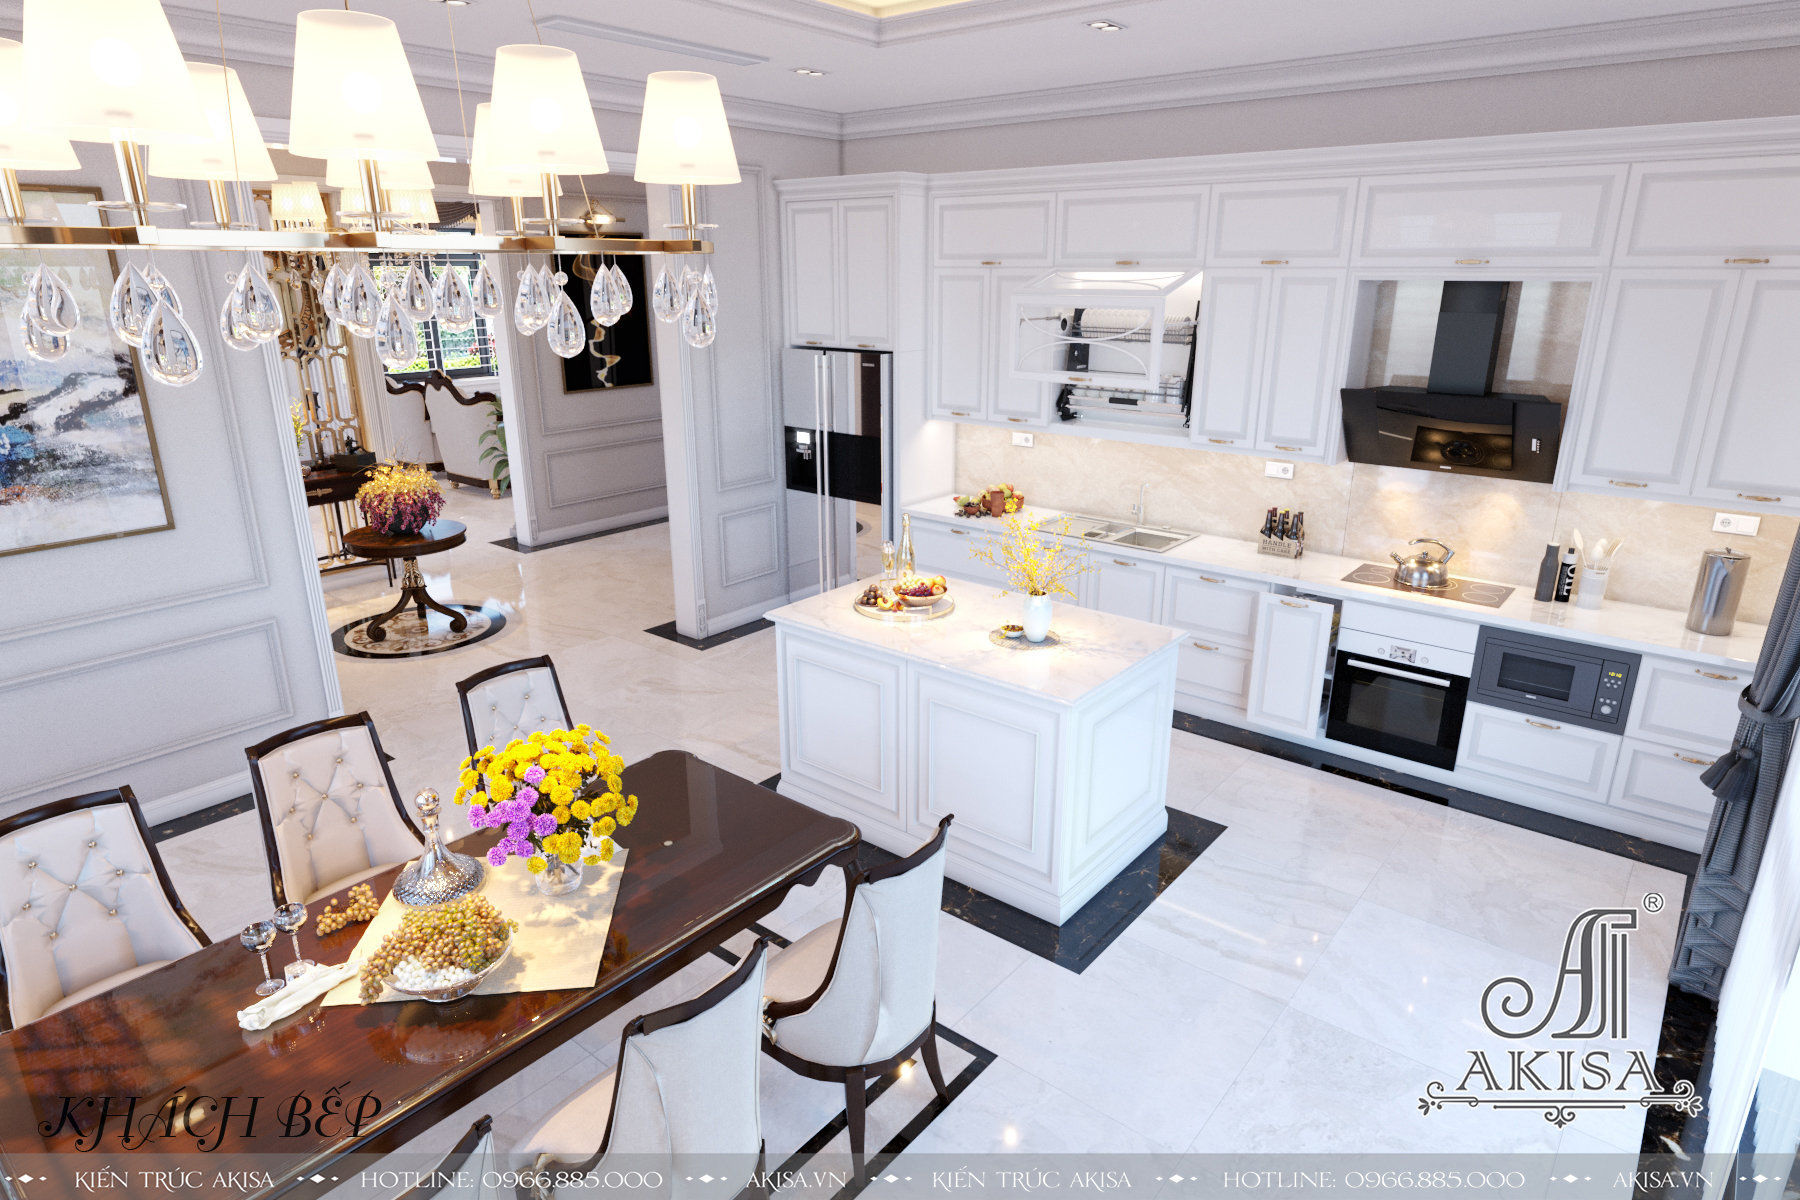 Phòng bếp sử dụng màu trắng làm chủ đạo kết hợp màu nâu gỗ của bàn ăn, mang tới sự vẻ đẹp trang nhã,tinh tế nhưng gần gũi, ấm cúng, là nơi sum họp, gắn kết các thành viên trong gia đình 